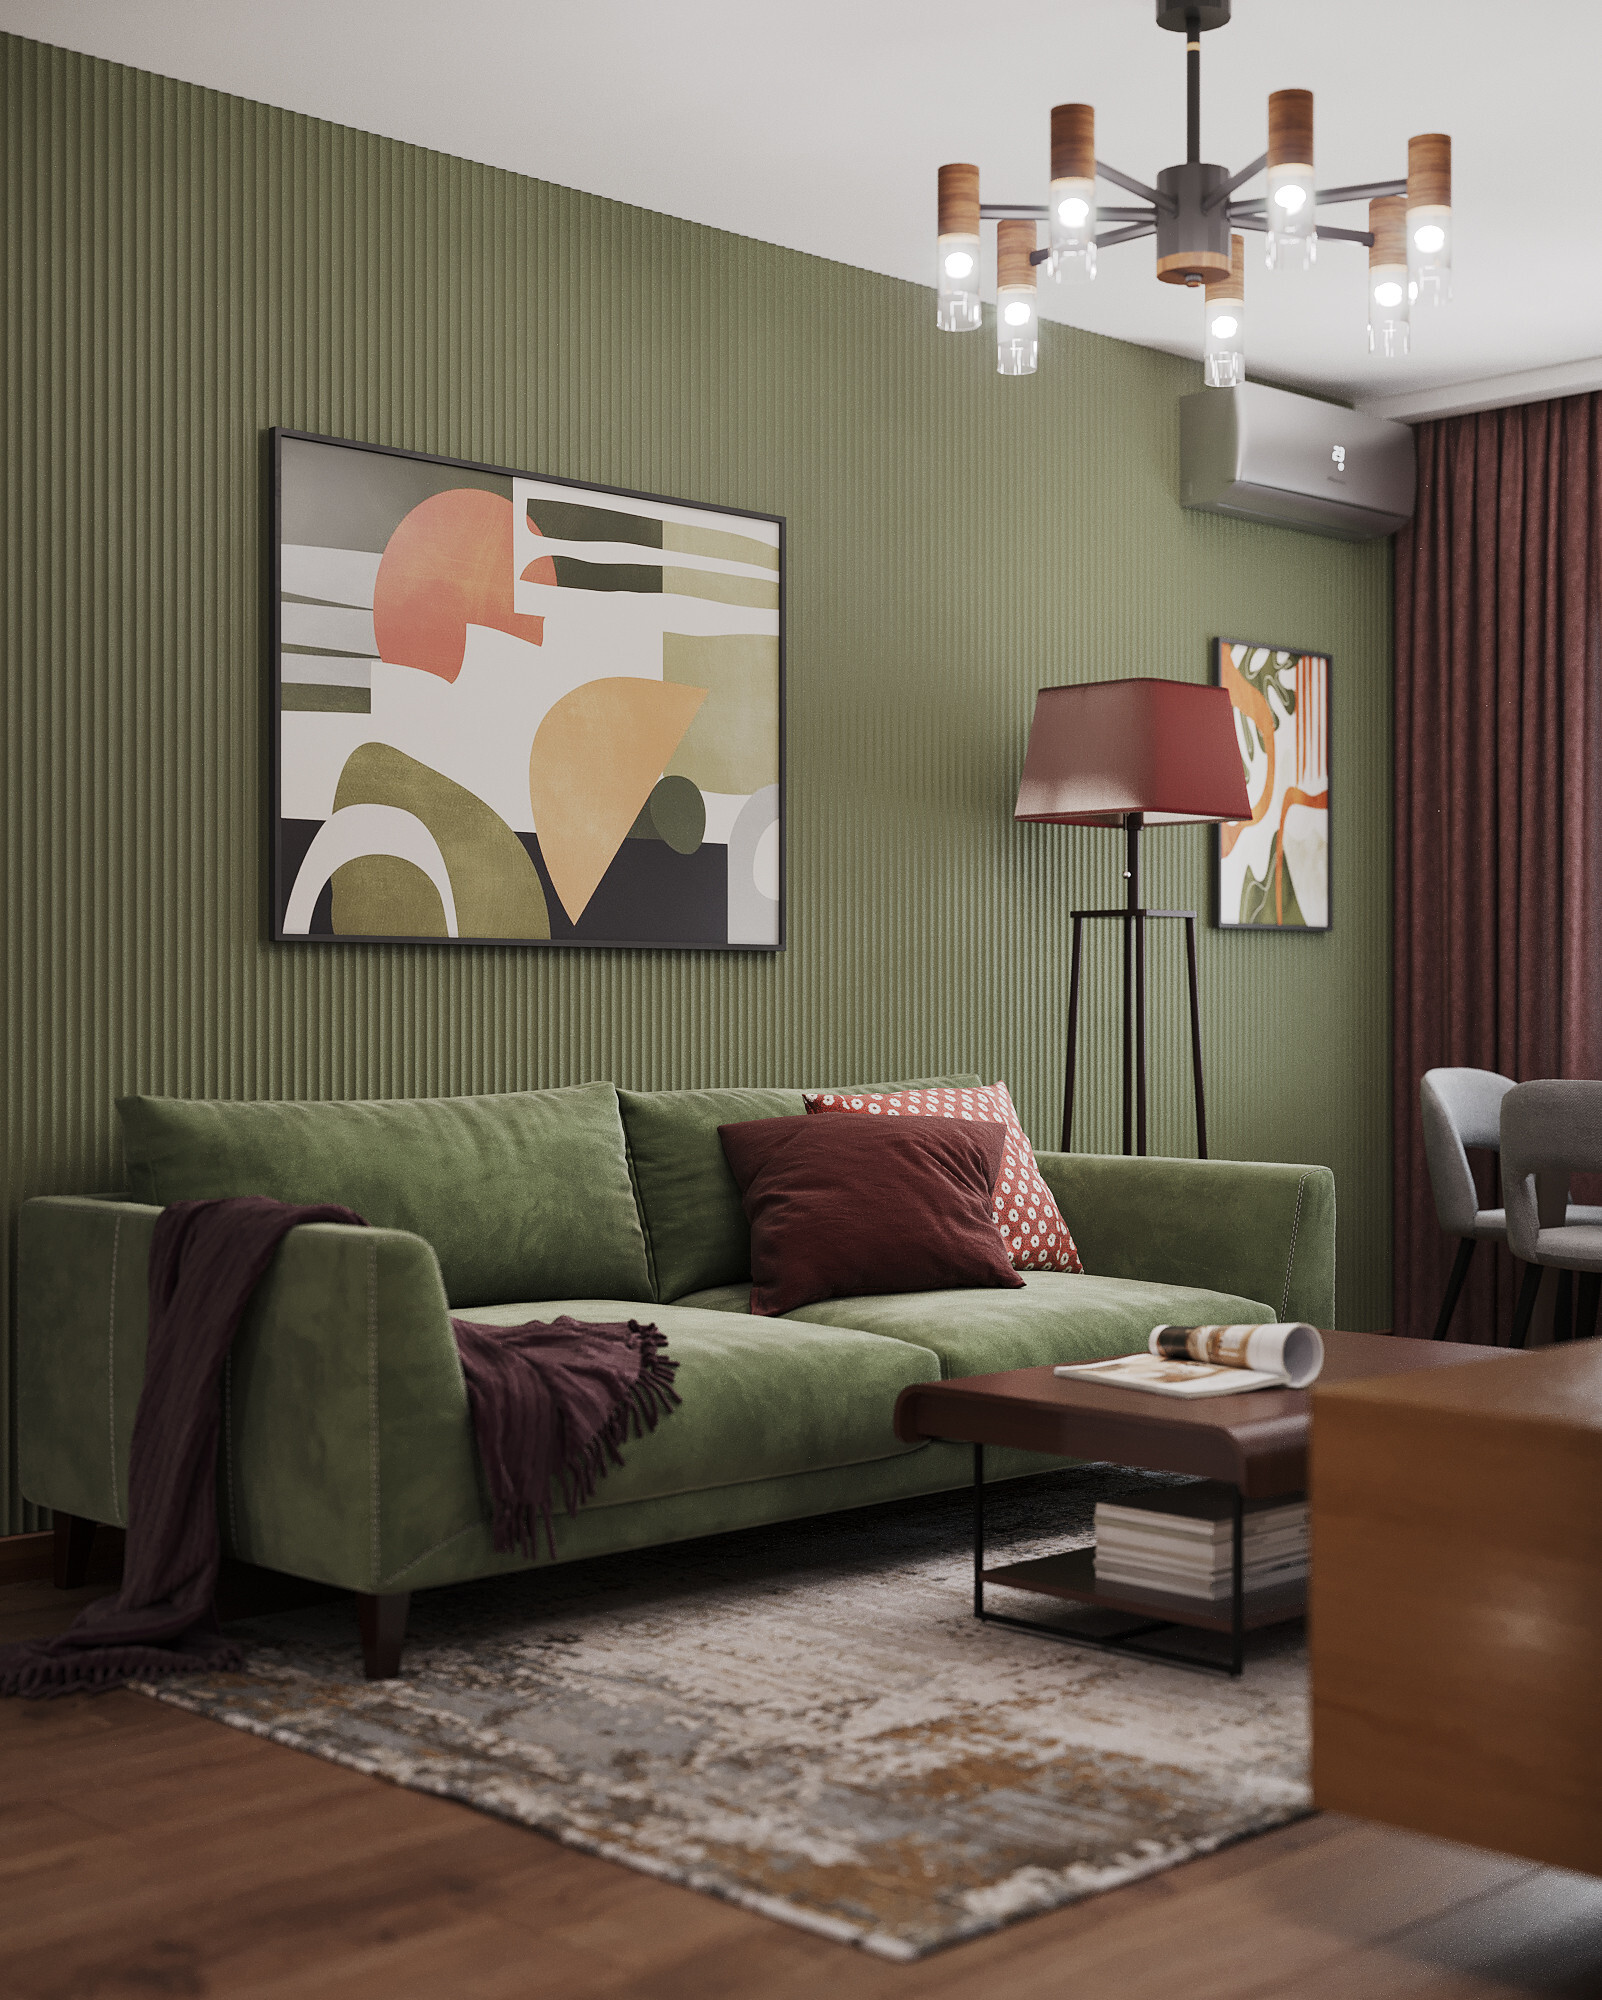 Интерьер гостиной cветовыми линиями, рейками с подсветкой и подсветкой настенной в стиле фьюжн